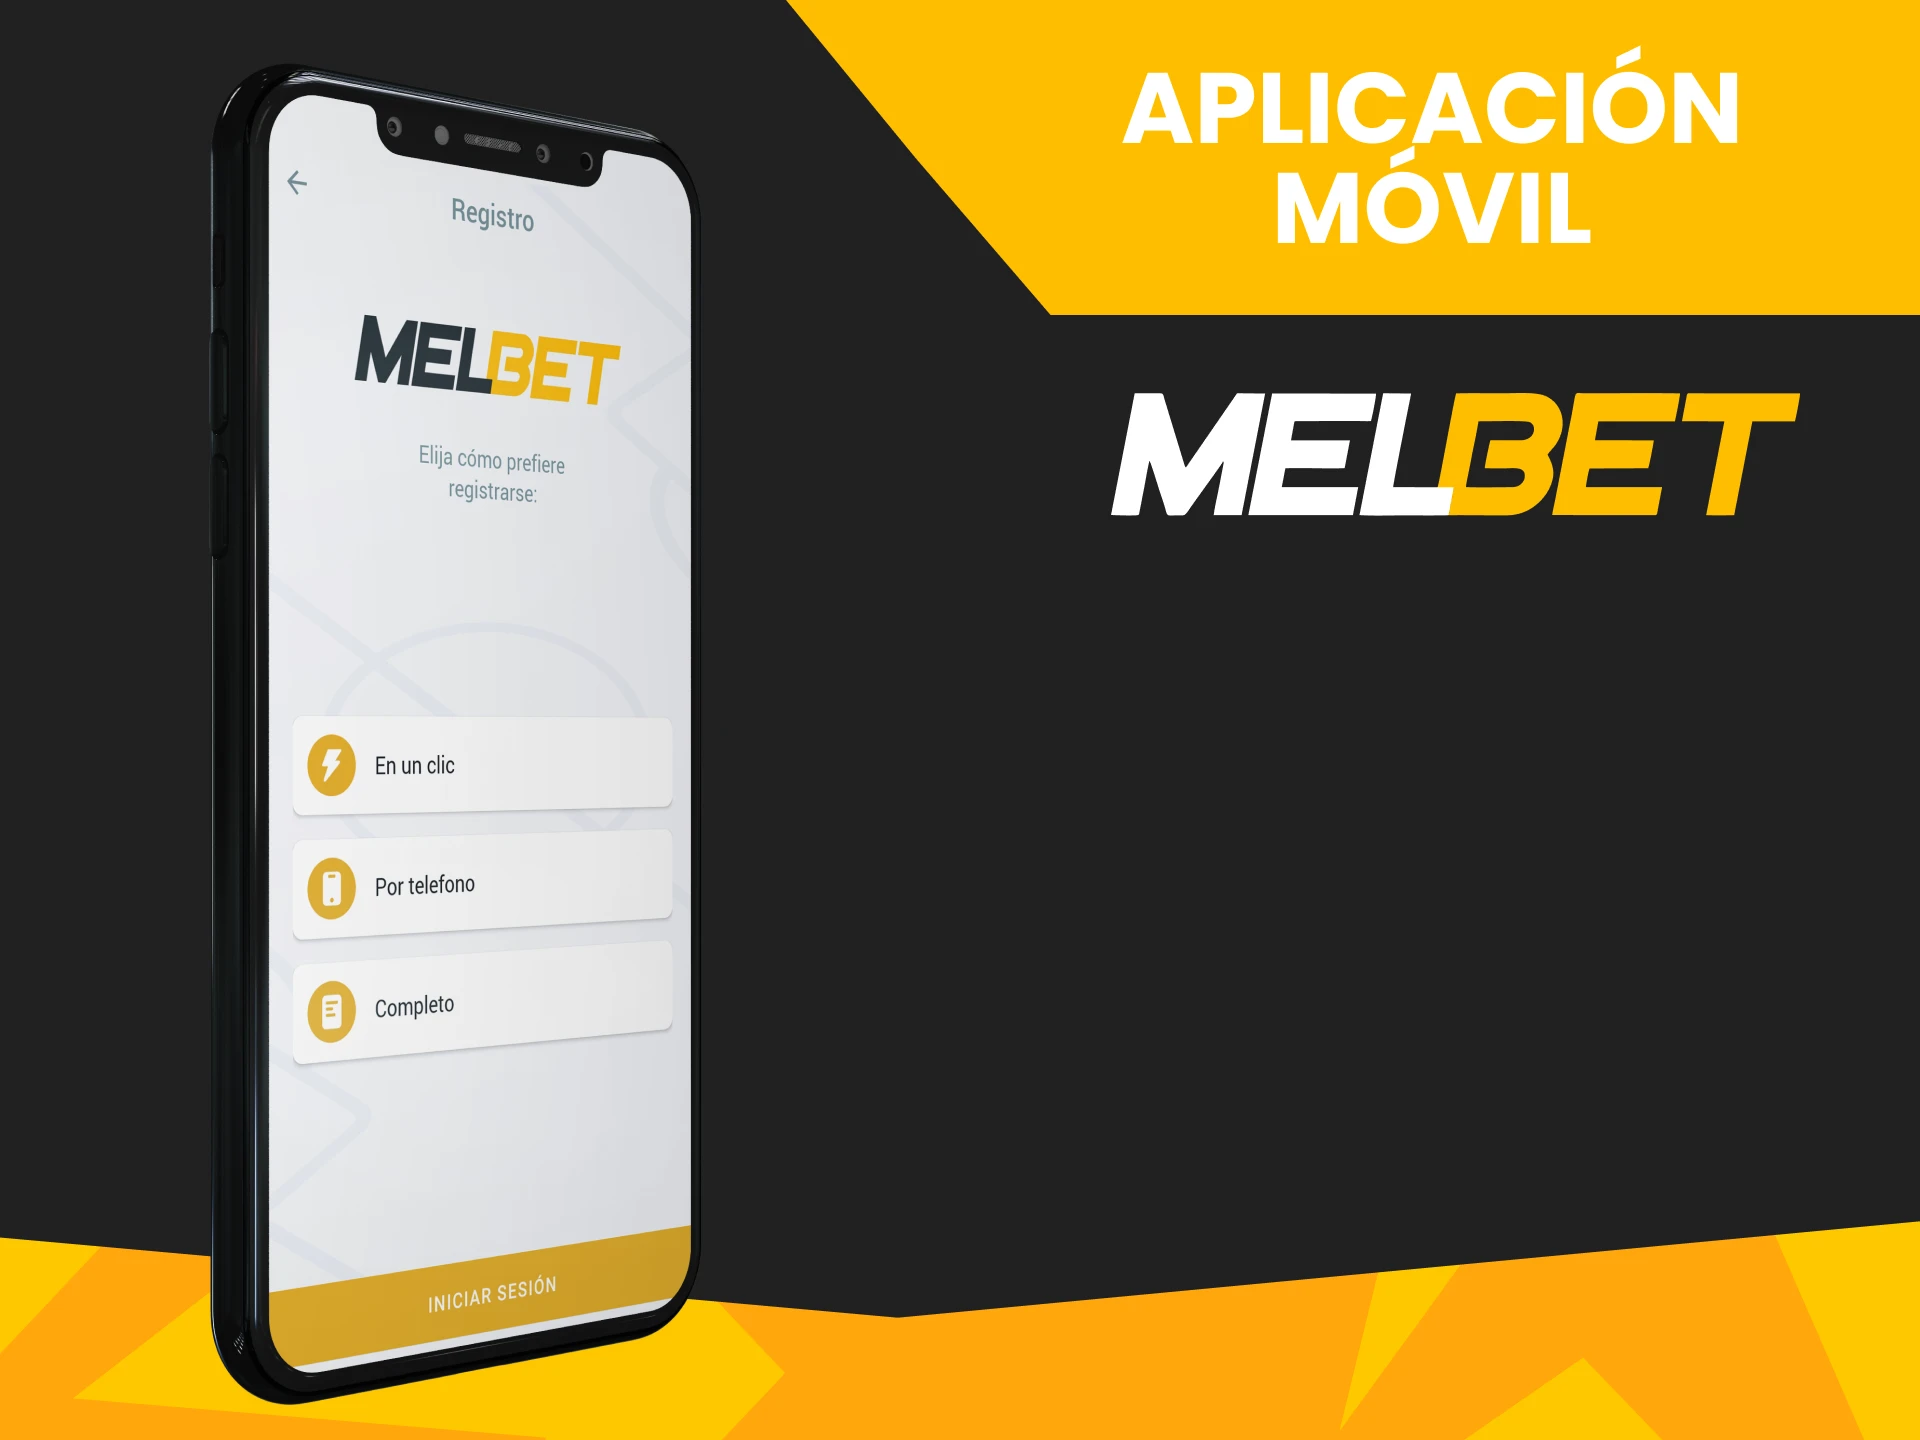 Puedes registrarte en Melbet a través de la aplicación.